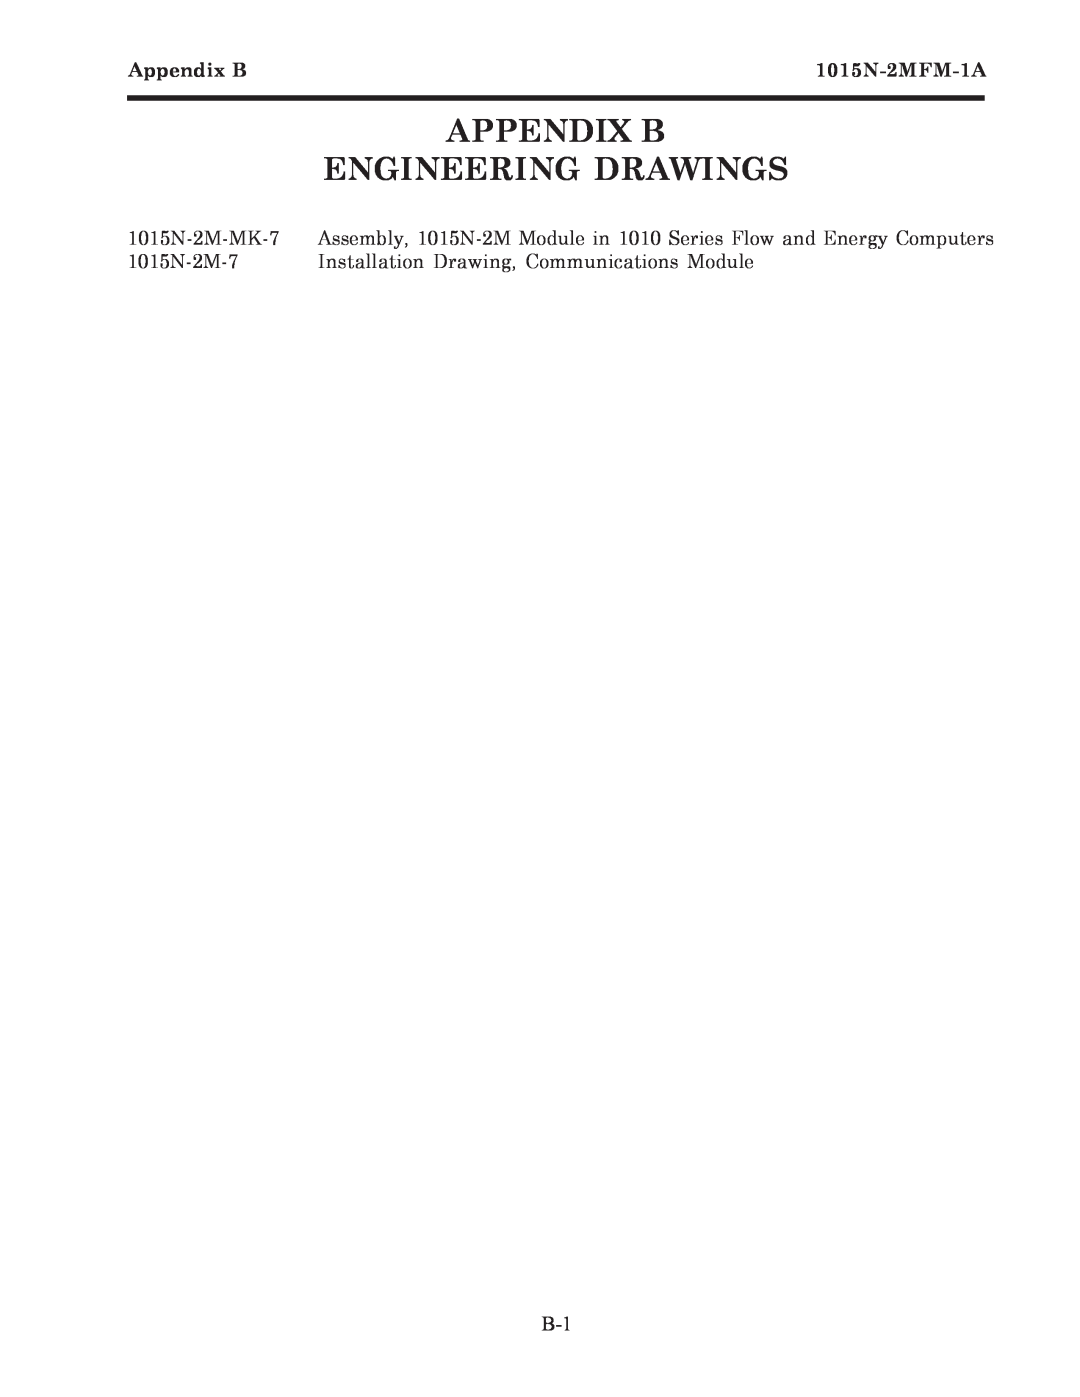 Siemens 1015N-2MFM-1A manual Appendix B Engineering Drawings 